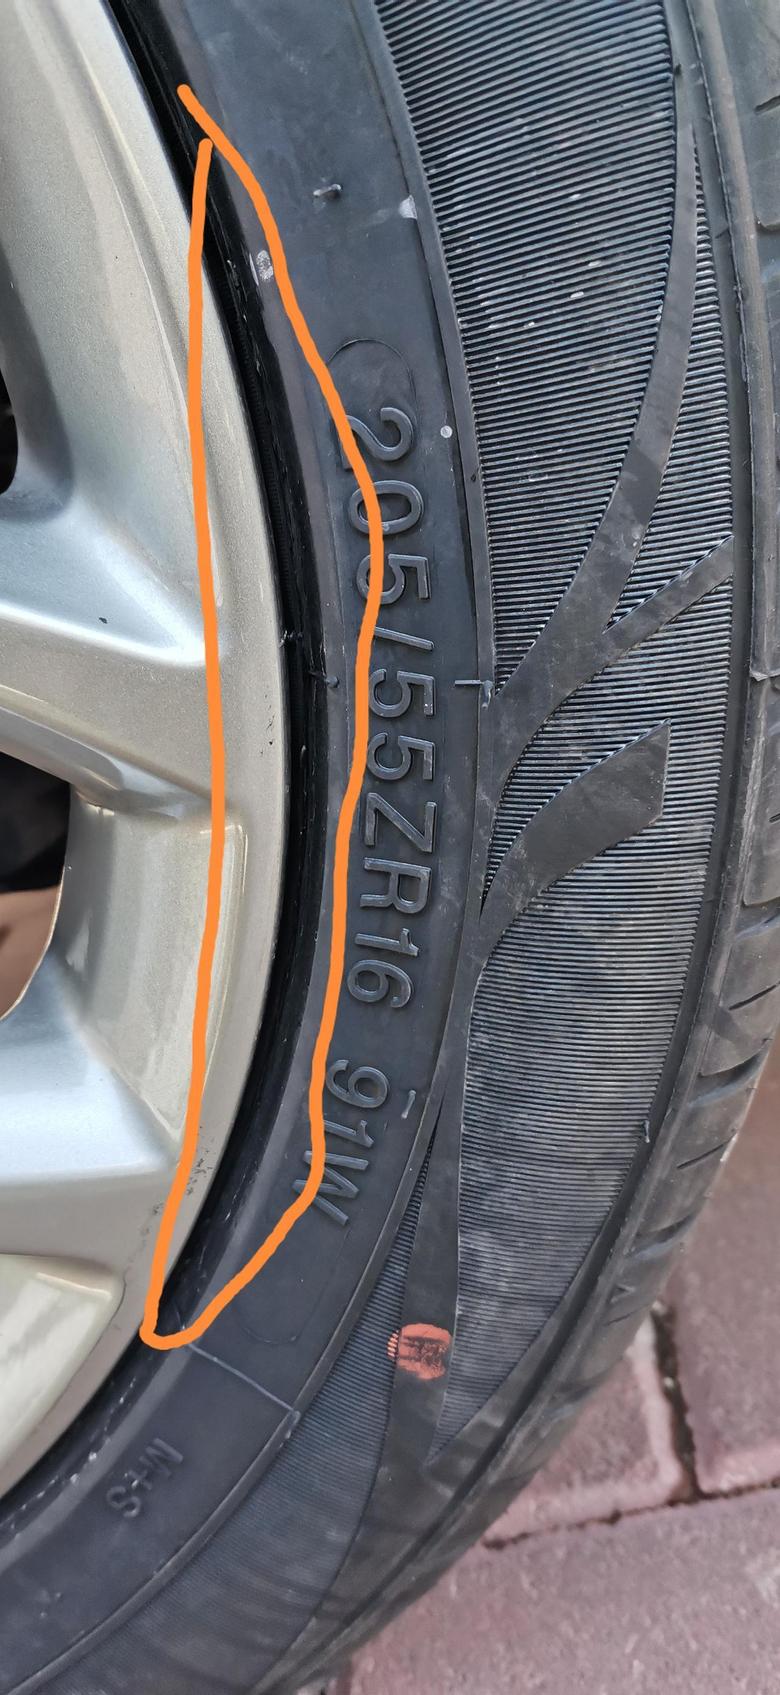 18远景新换的轮胎回来发现轮毂跟轮胎之间缝隙比之前大问下这个有影响吗？